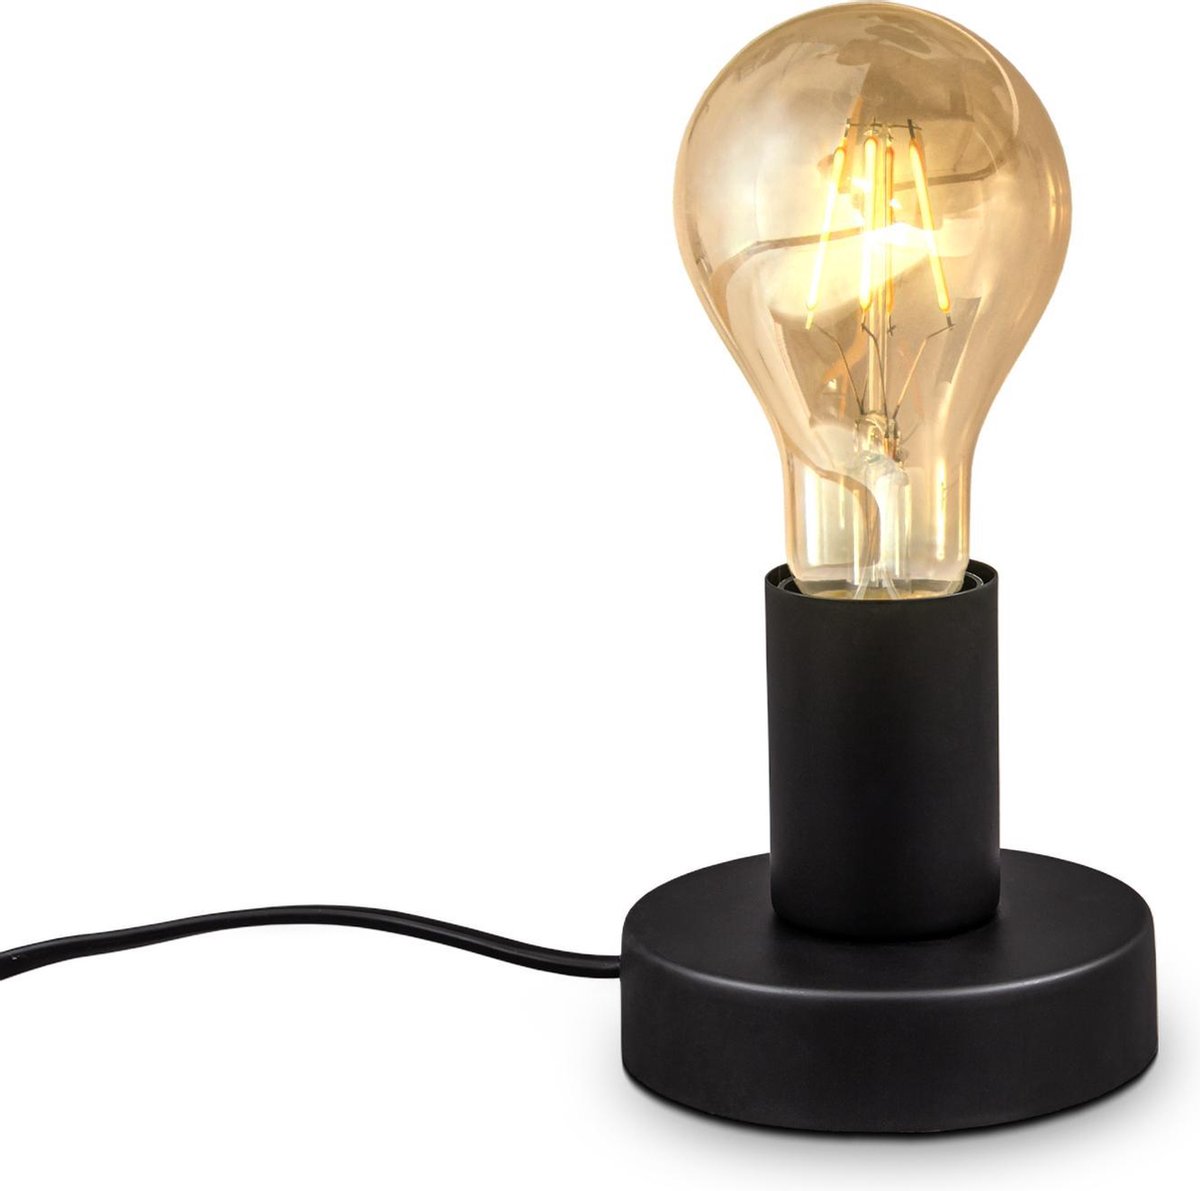 B.K.Licht - Industriële Tafellamp - met retro design - bedlamp voor binnen - aan/uit schakelaar - Ø10cm - E27 fitting - excl. lichtbron - B.K.Licht